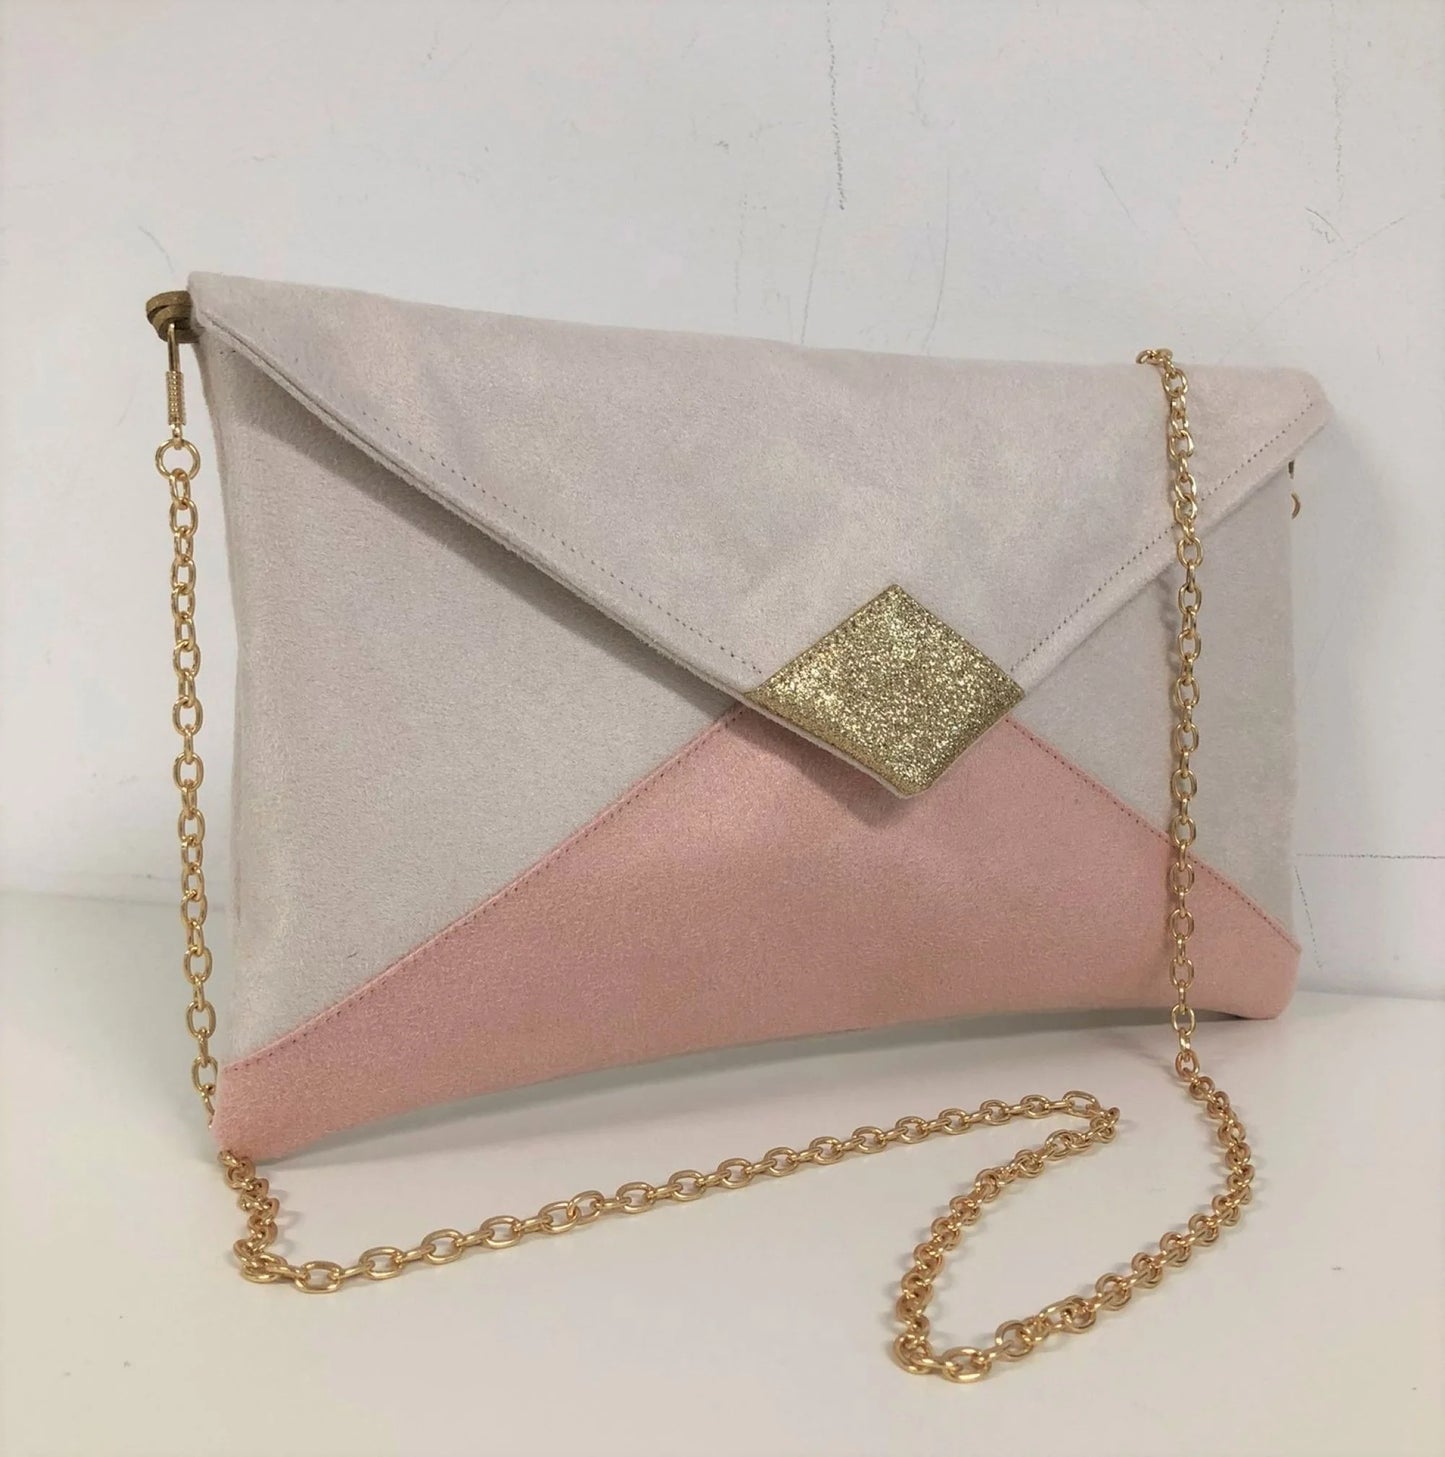 Le sac pochette Isa écru et rose poudré à paillettes dorées avec chainette .